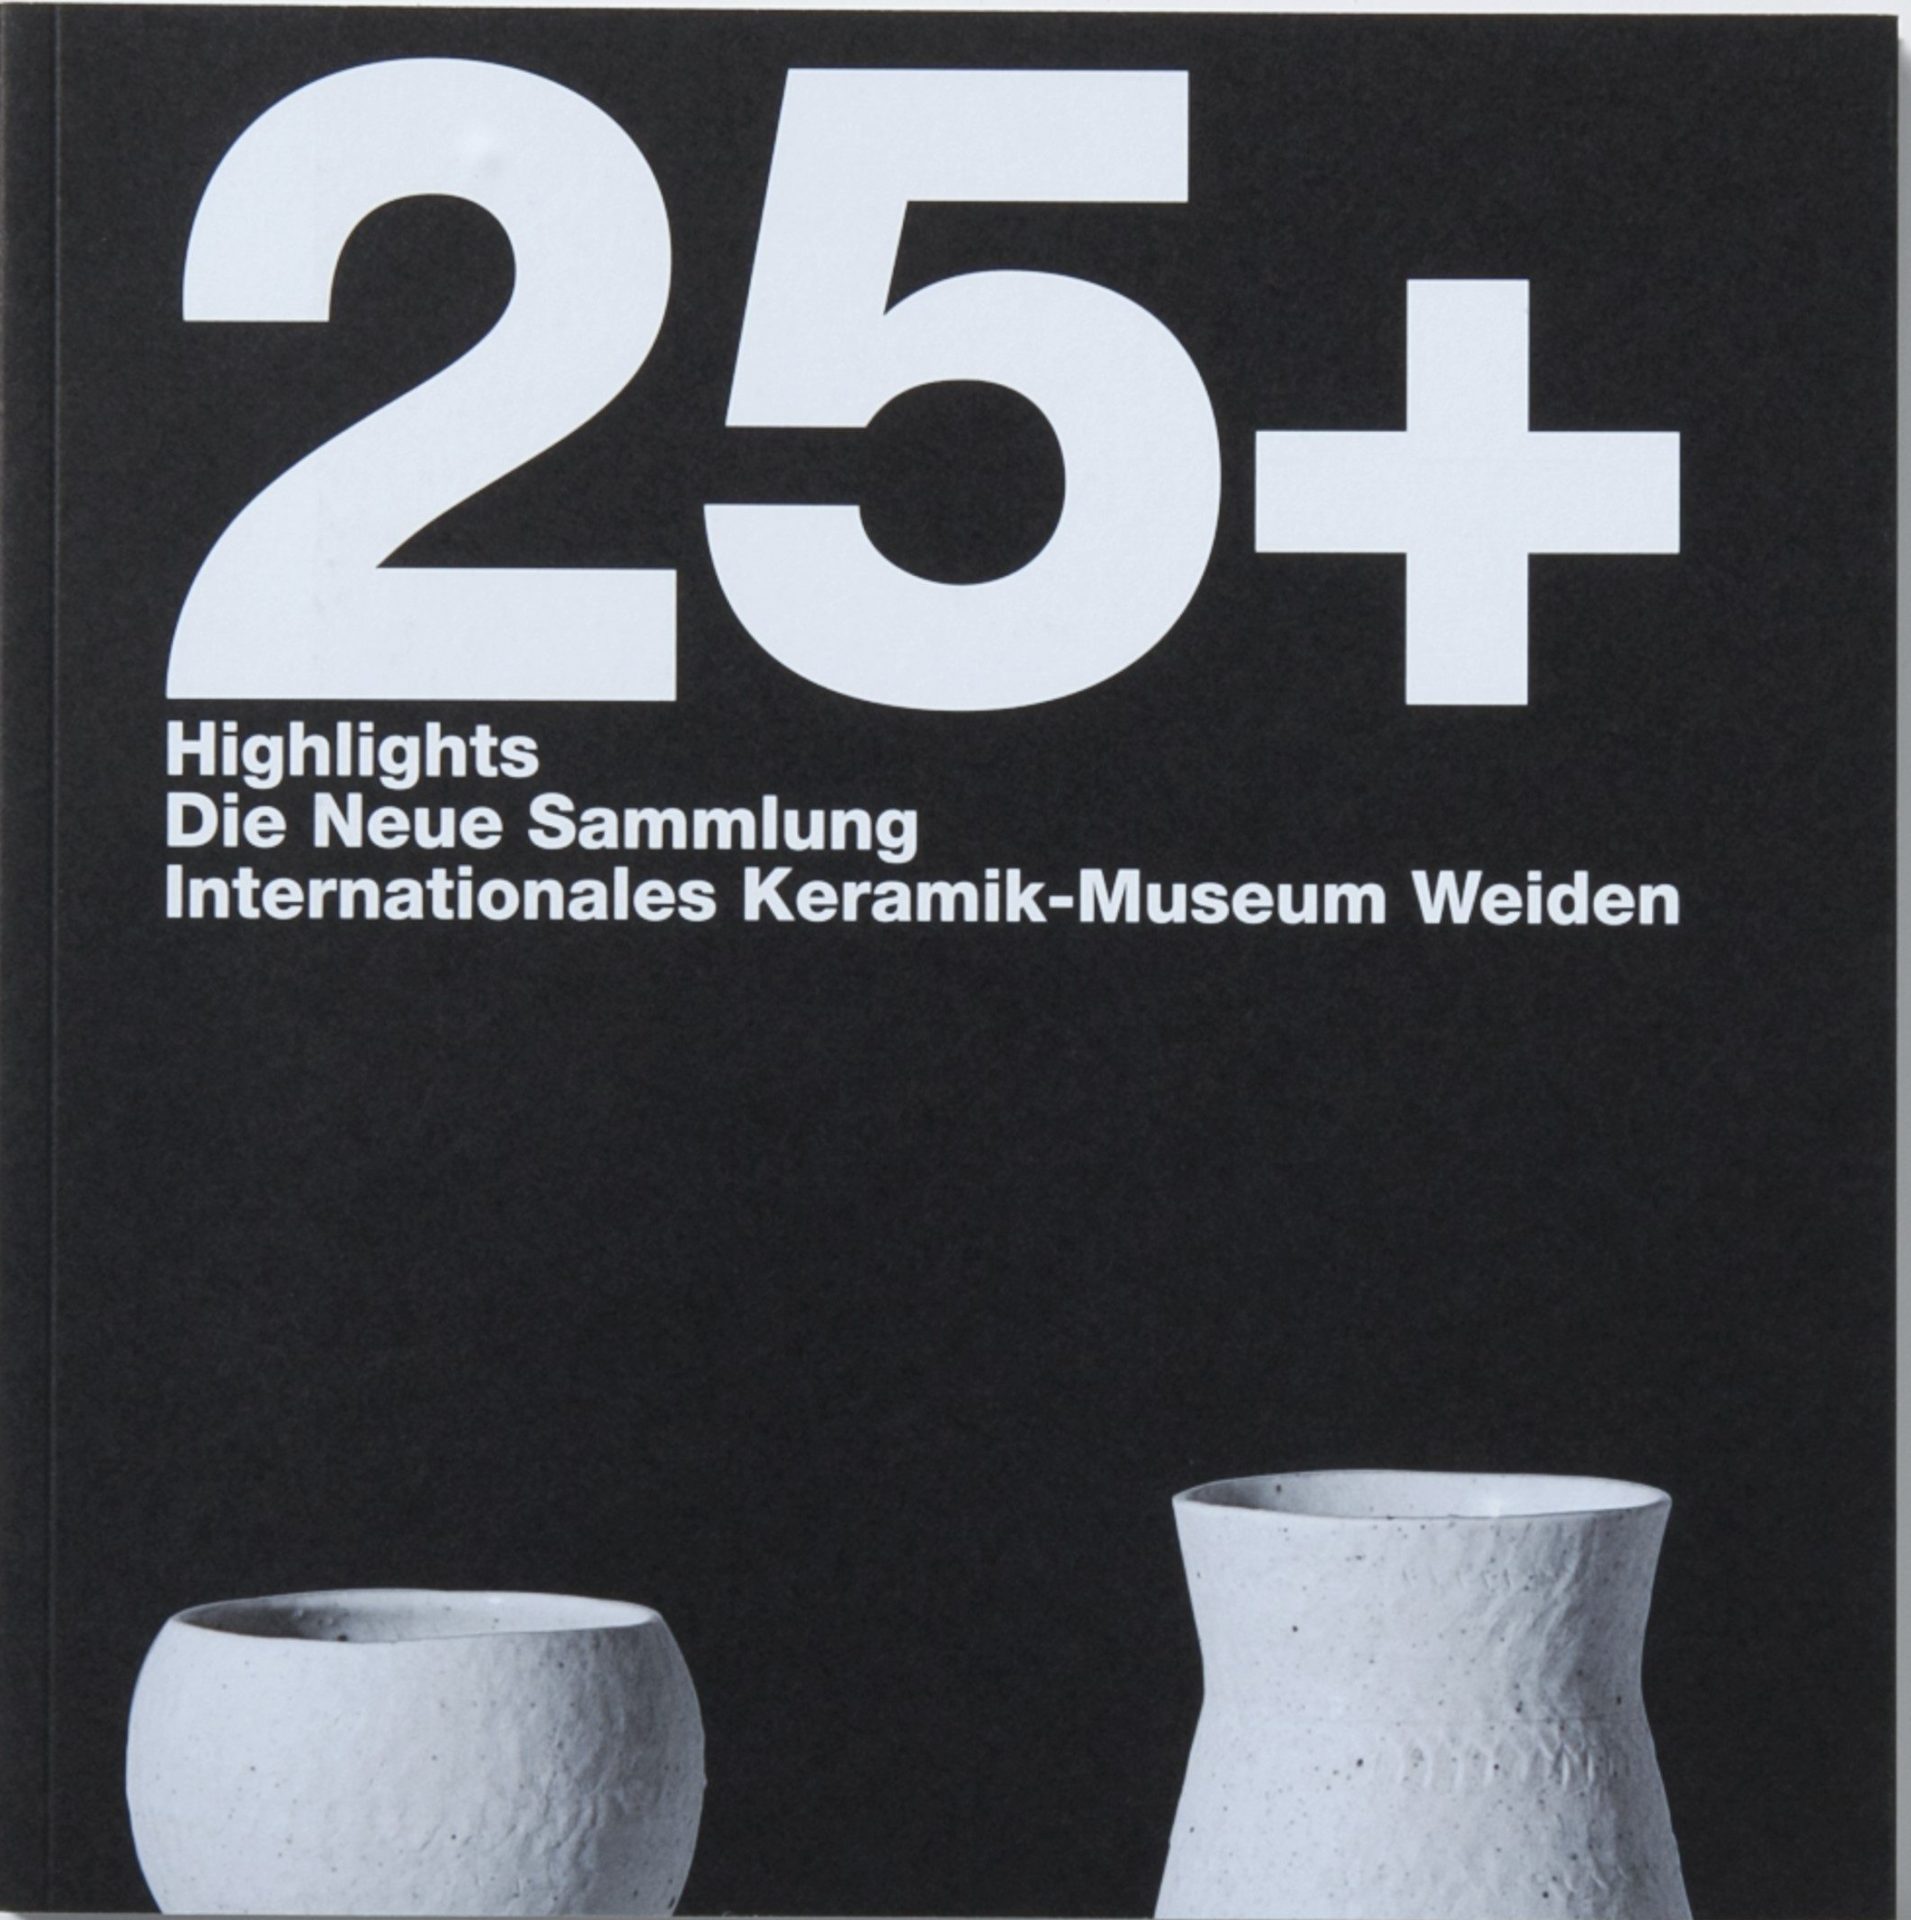 Auf scharzem Grund weiße Beschriftung, 25+ Highlights Die Neue Sammlung Internationales Keramik-Museum Weiden. Am unteren Rand zwei weiße, angeschnittene Vasen.